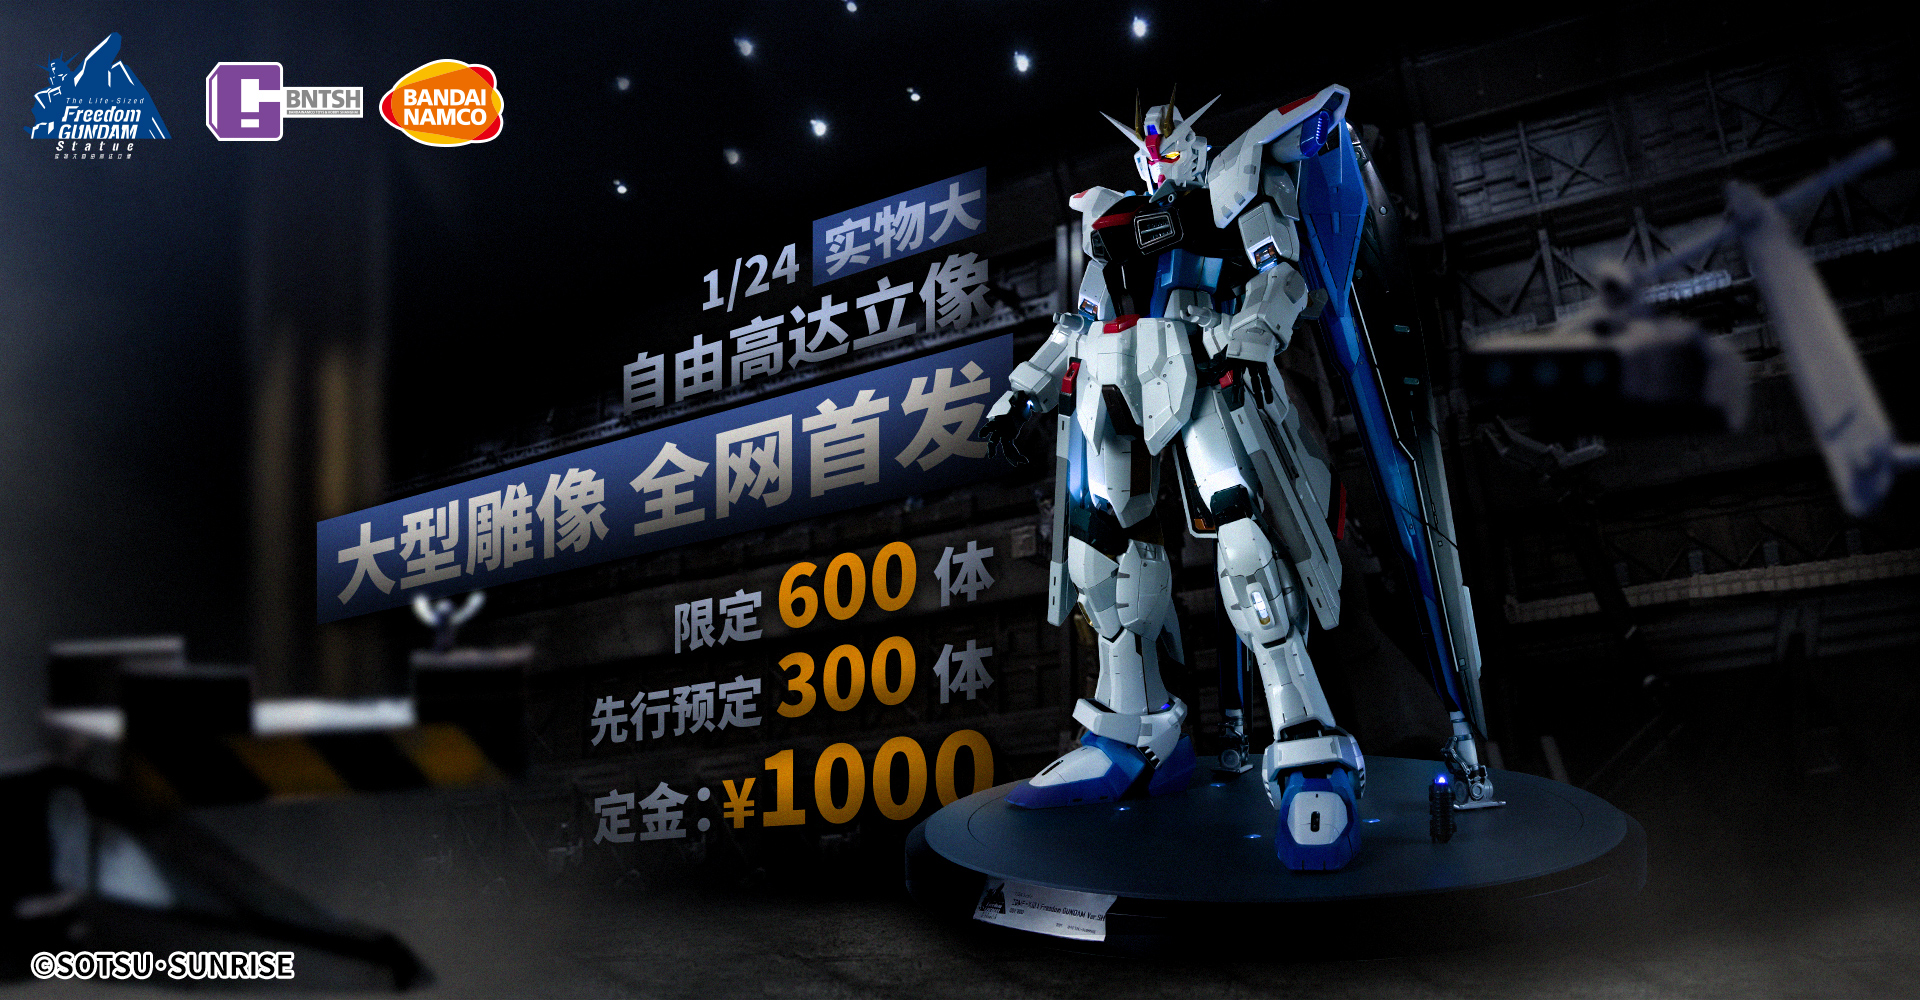 1/24 TheLife-Sized Freedom Gundam Statue MINATURE MODEL